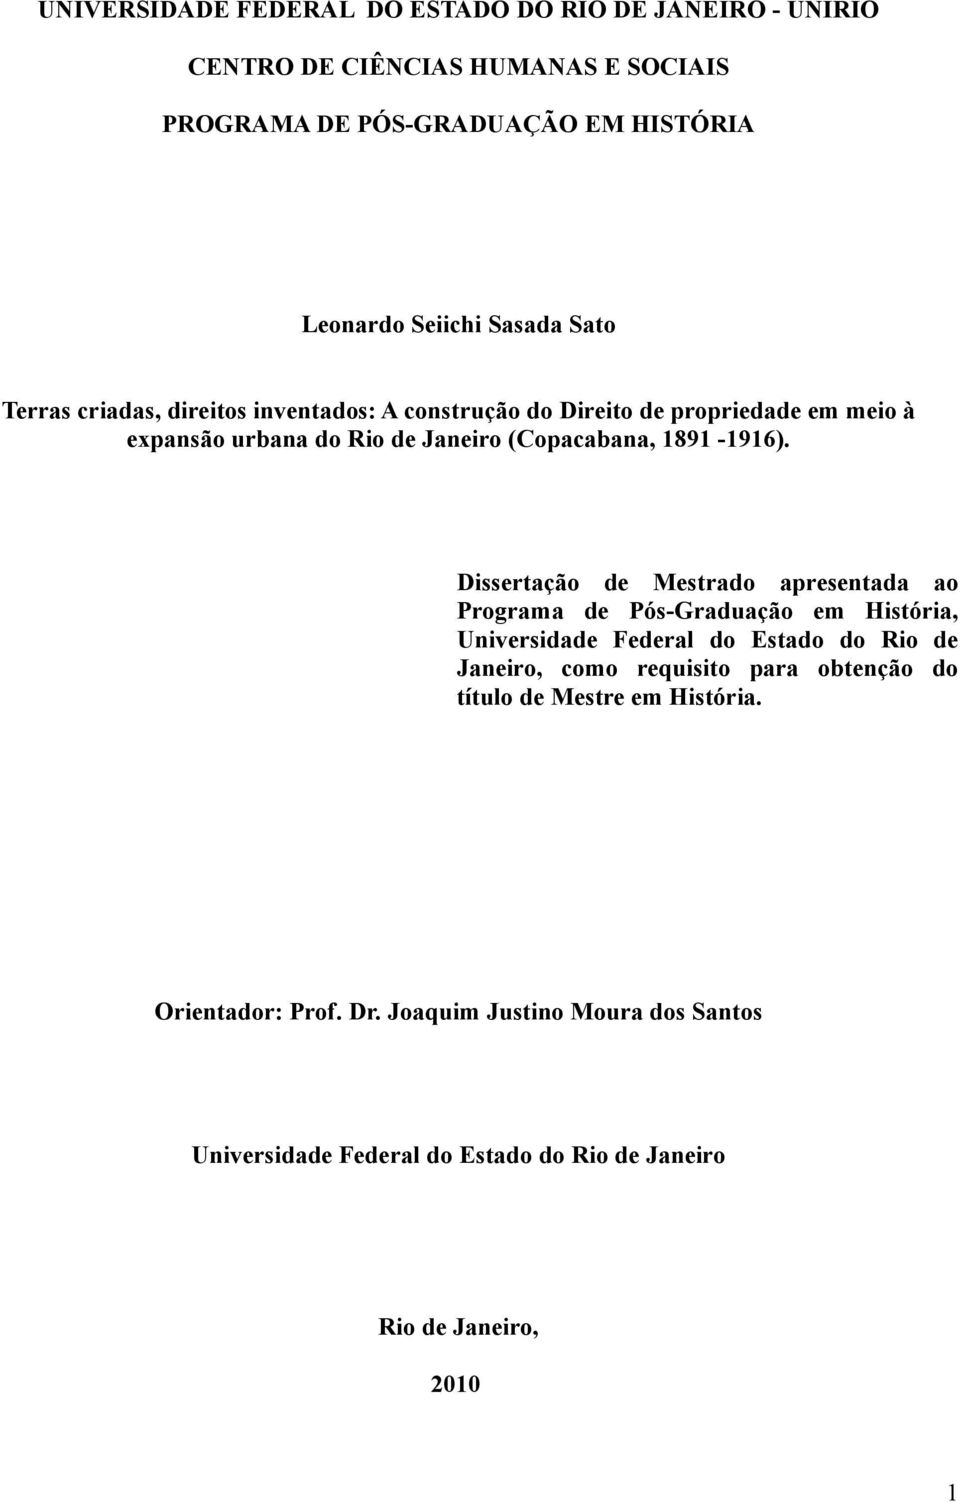 Dissertação de Mestrado apresentada ao Programa de Pós-Graduação em História, Universidade Federal do Estado do Rio de Janeiro, como requisito para